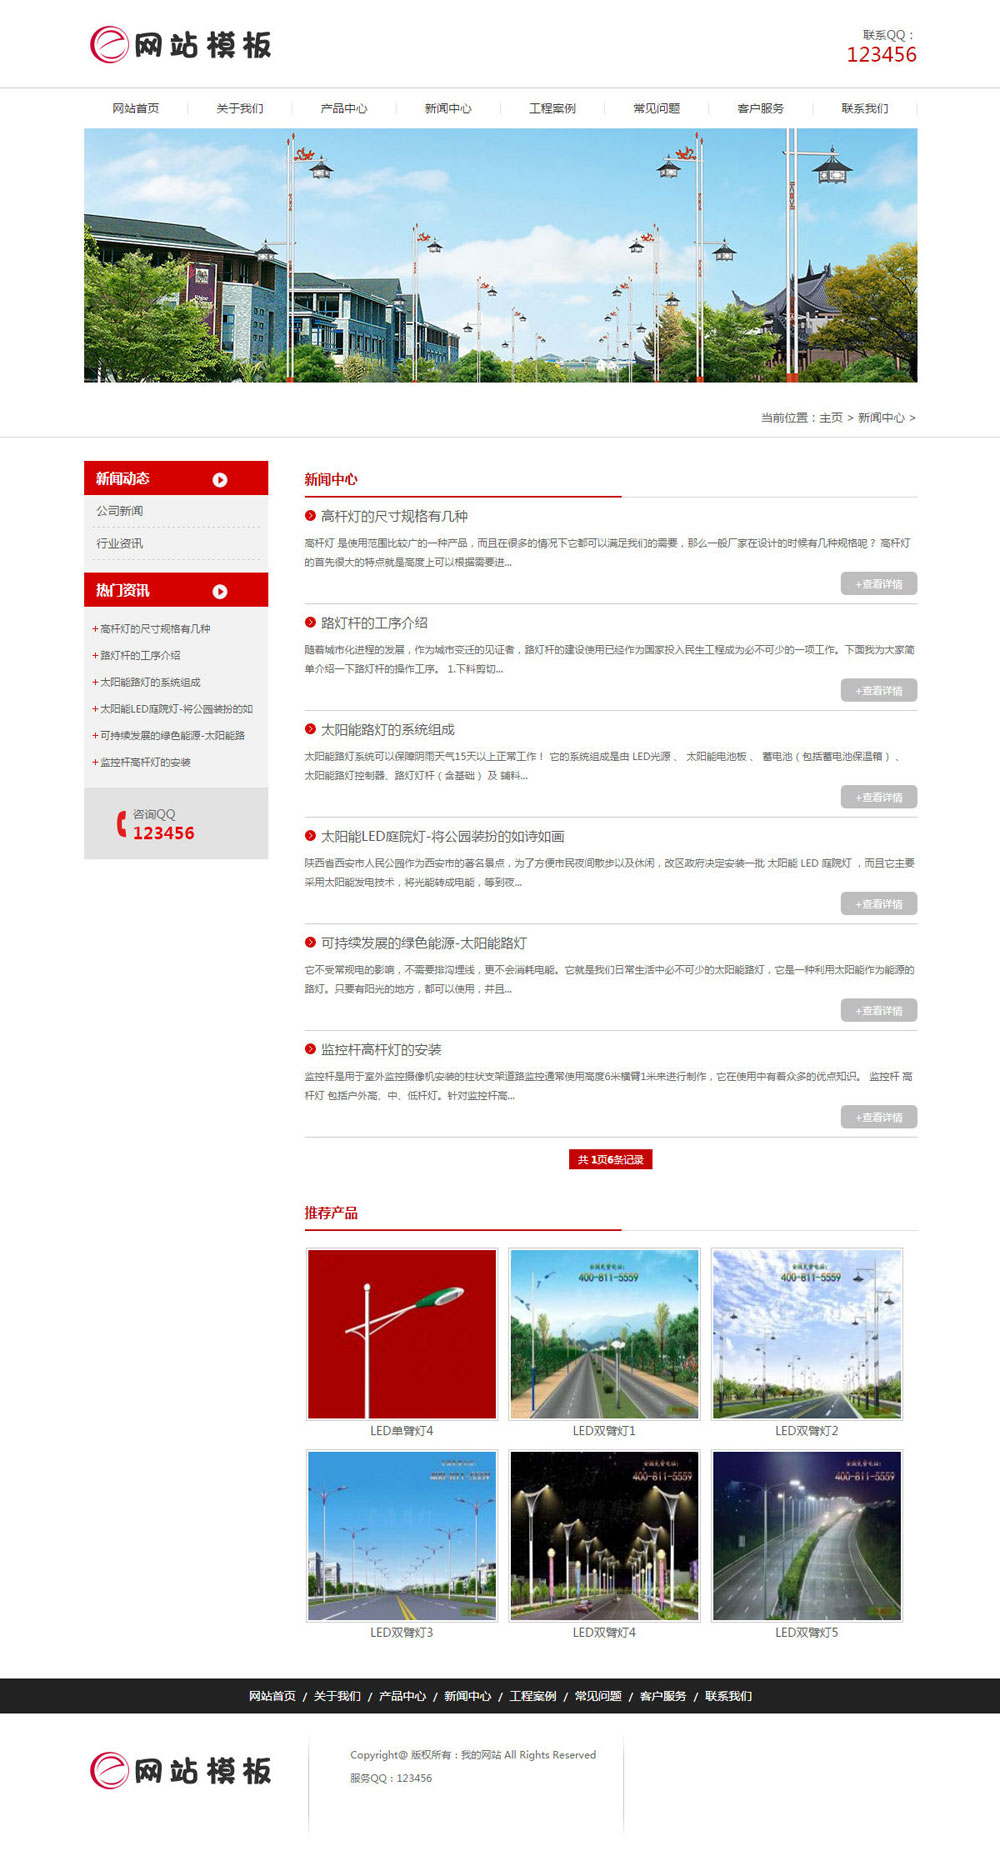 红色道路照明设备公司网站织梦模板